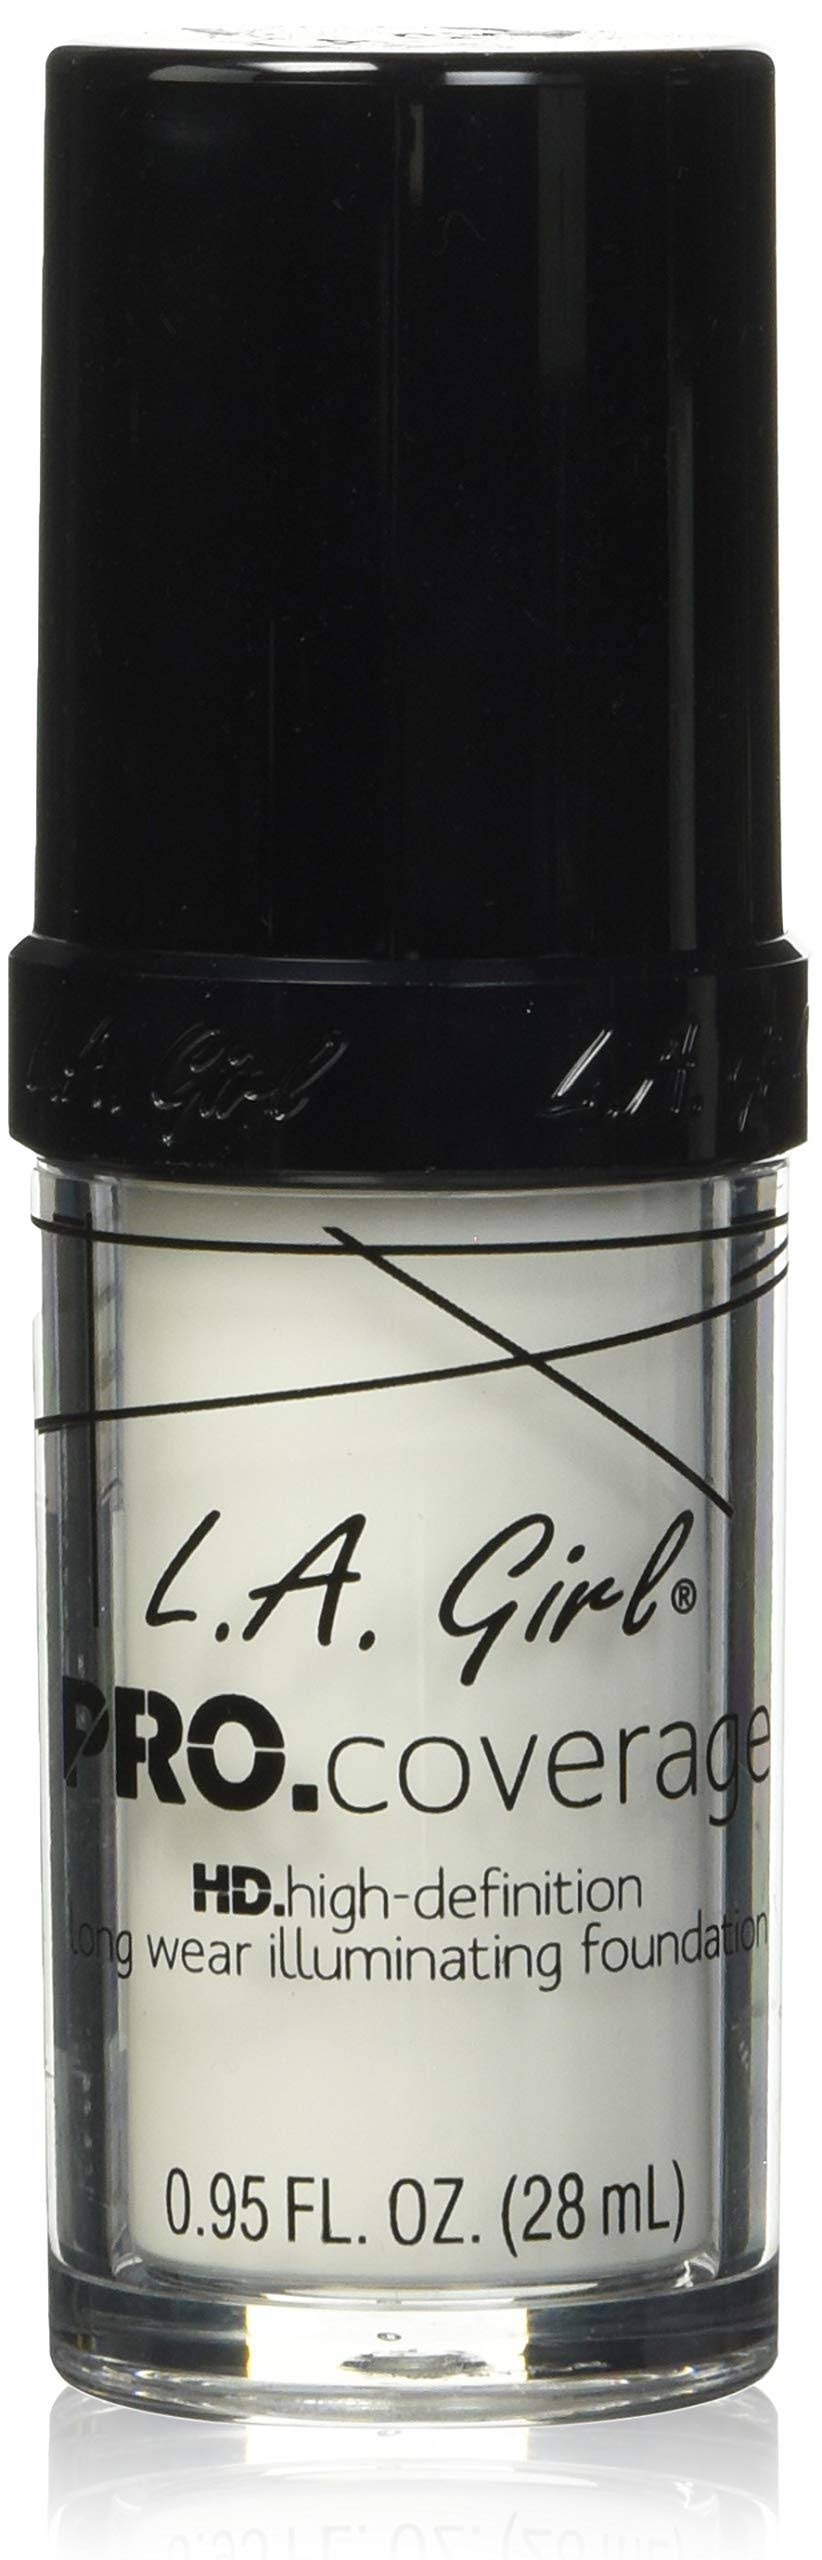 L.A. Girl Pro Coverage Liquid Foundation - White, 0.95oz